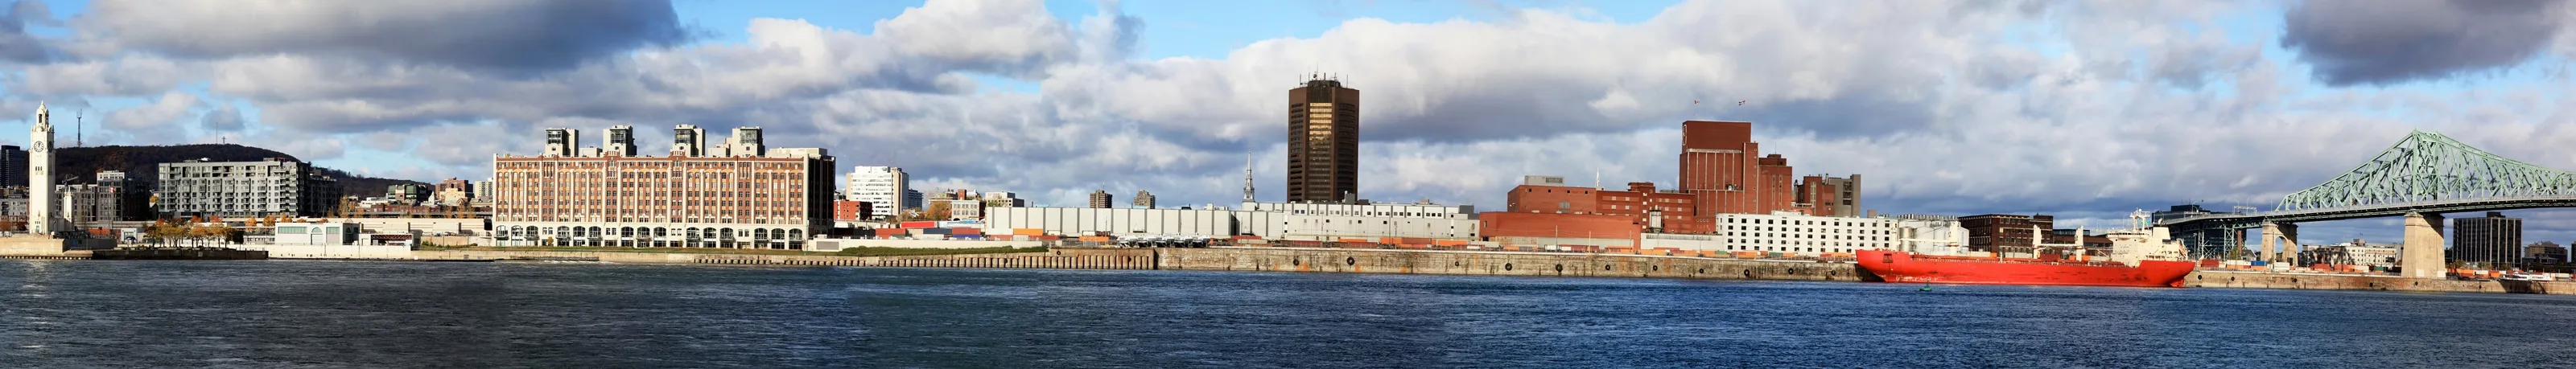 Navire devant le port de Montréal © iStock / Onfokus